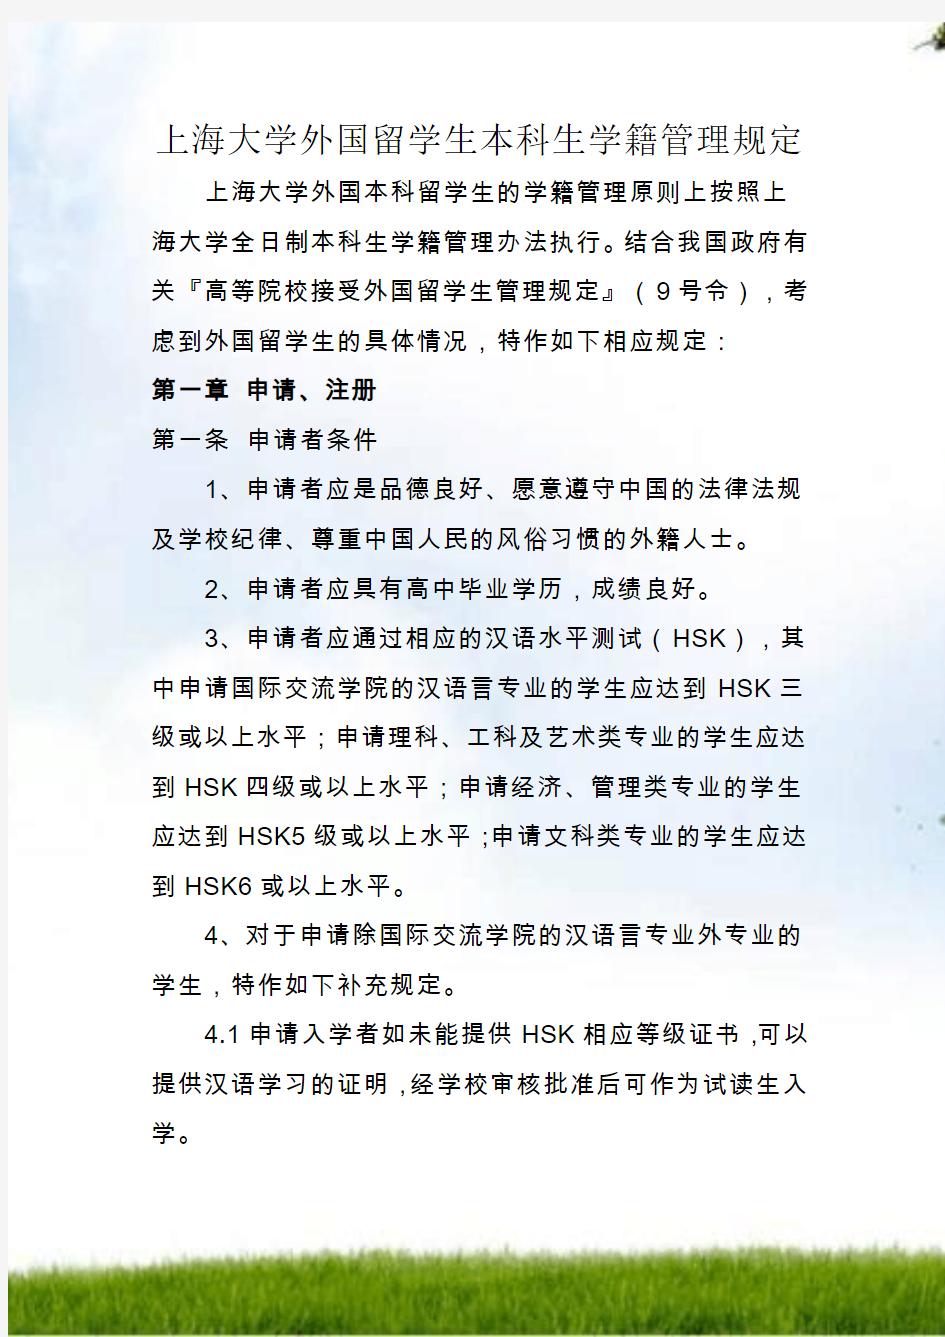 #上海大学外国留学生本科生学籍管理规定